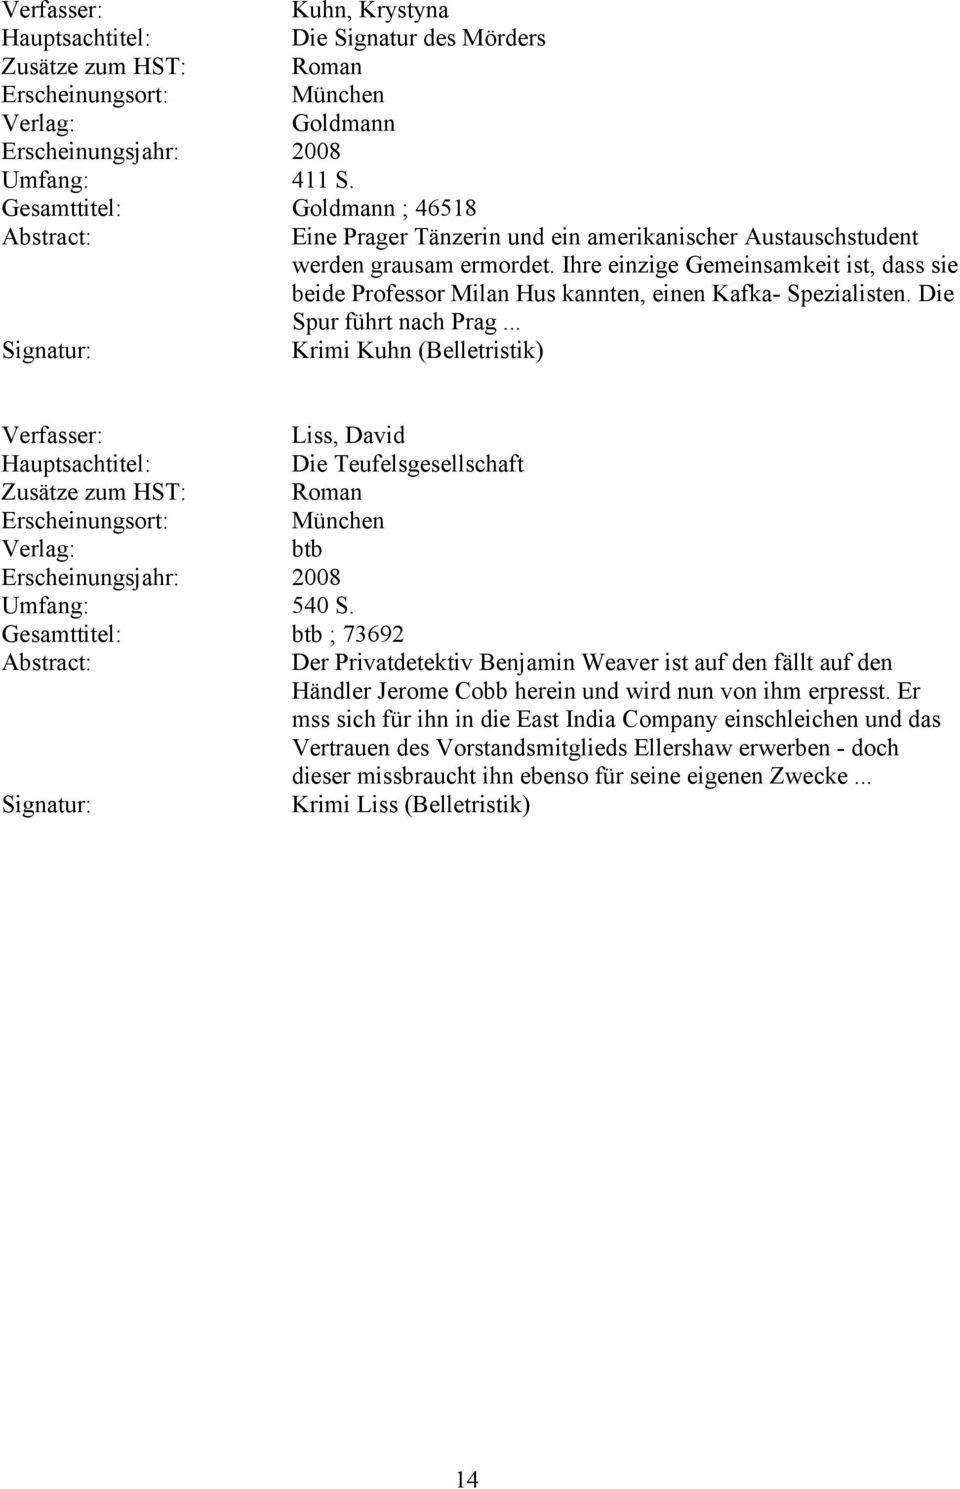 .. Krimi Kuhn (Belletristik) Liss, David Die Teufelsgesellschaft btb Umfang: 540 S.